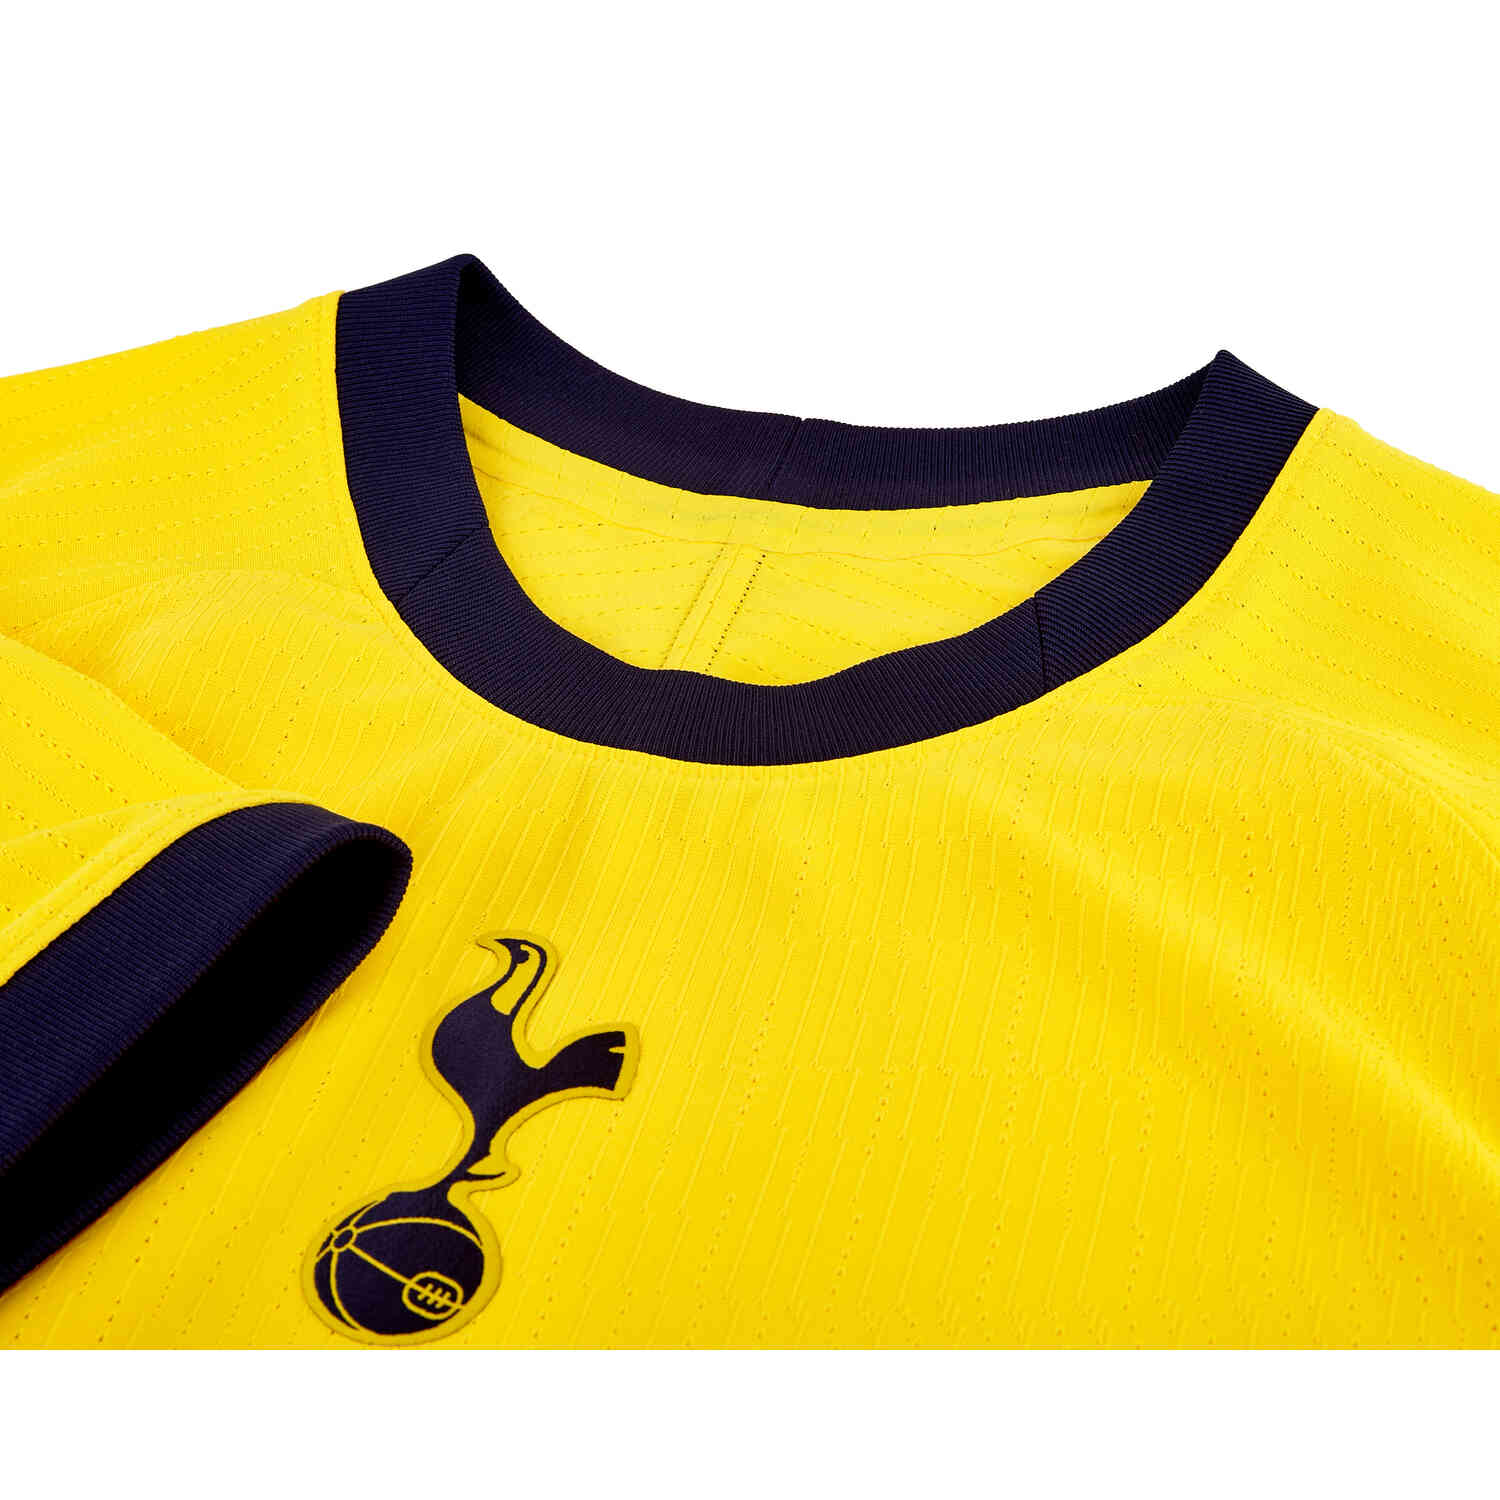 Nike 2020/21 Tottenham Hotspur Vapor Third Match Jersey Top Shirt CD4195  398 S